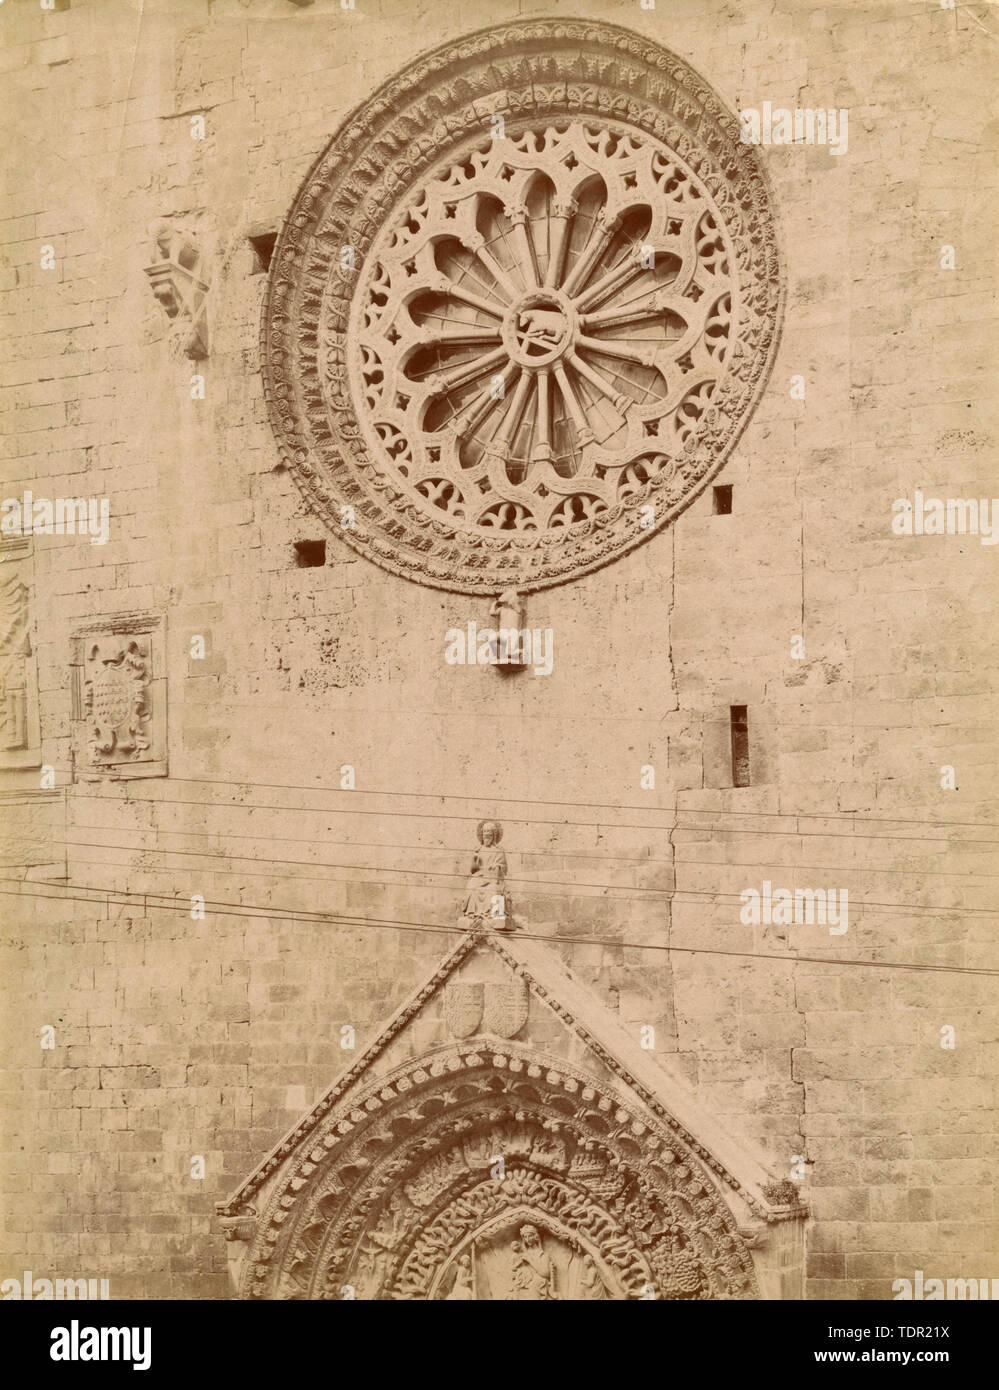 Vista del ojo y el frontispicio de la puerta de la catedral, de Altamura, Italia 1880 Foto de stock